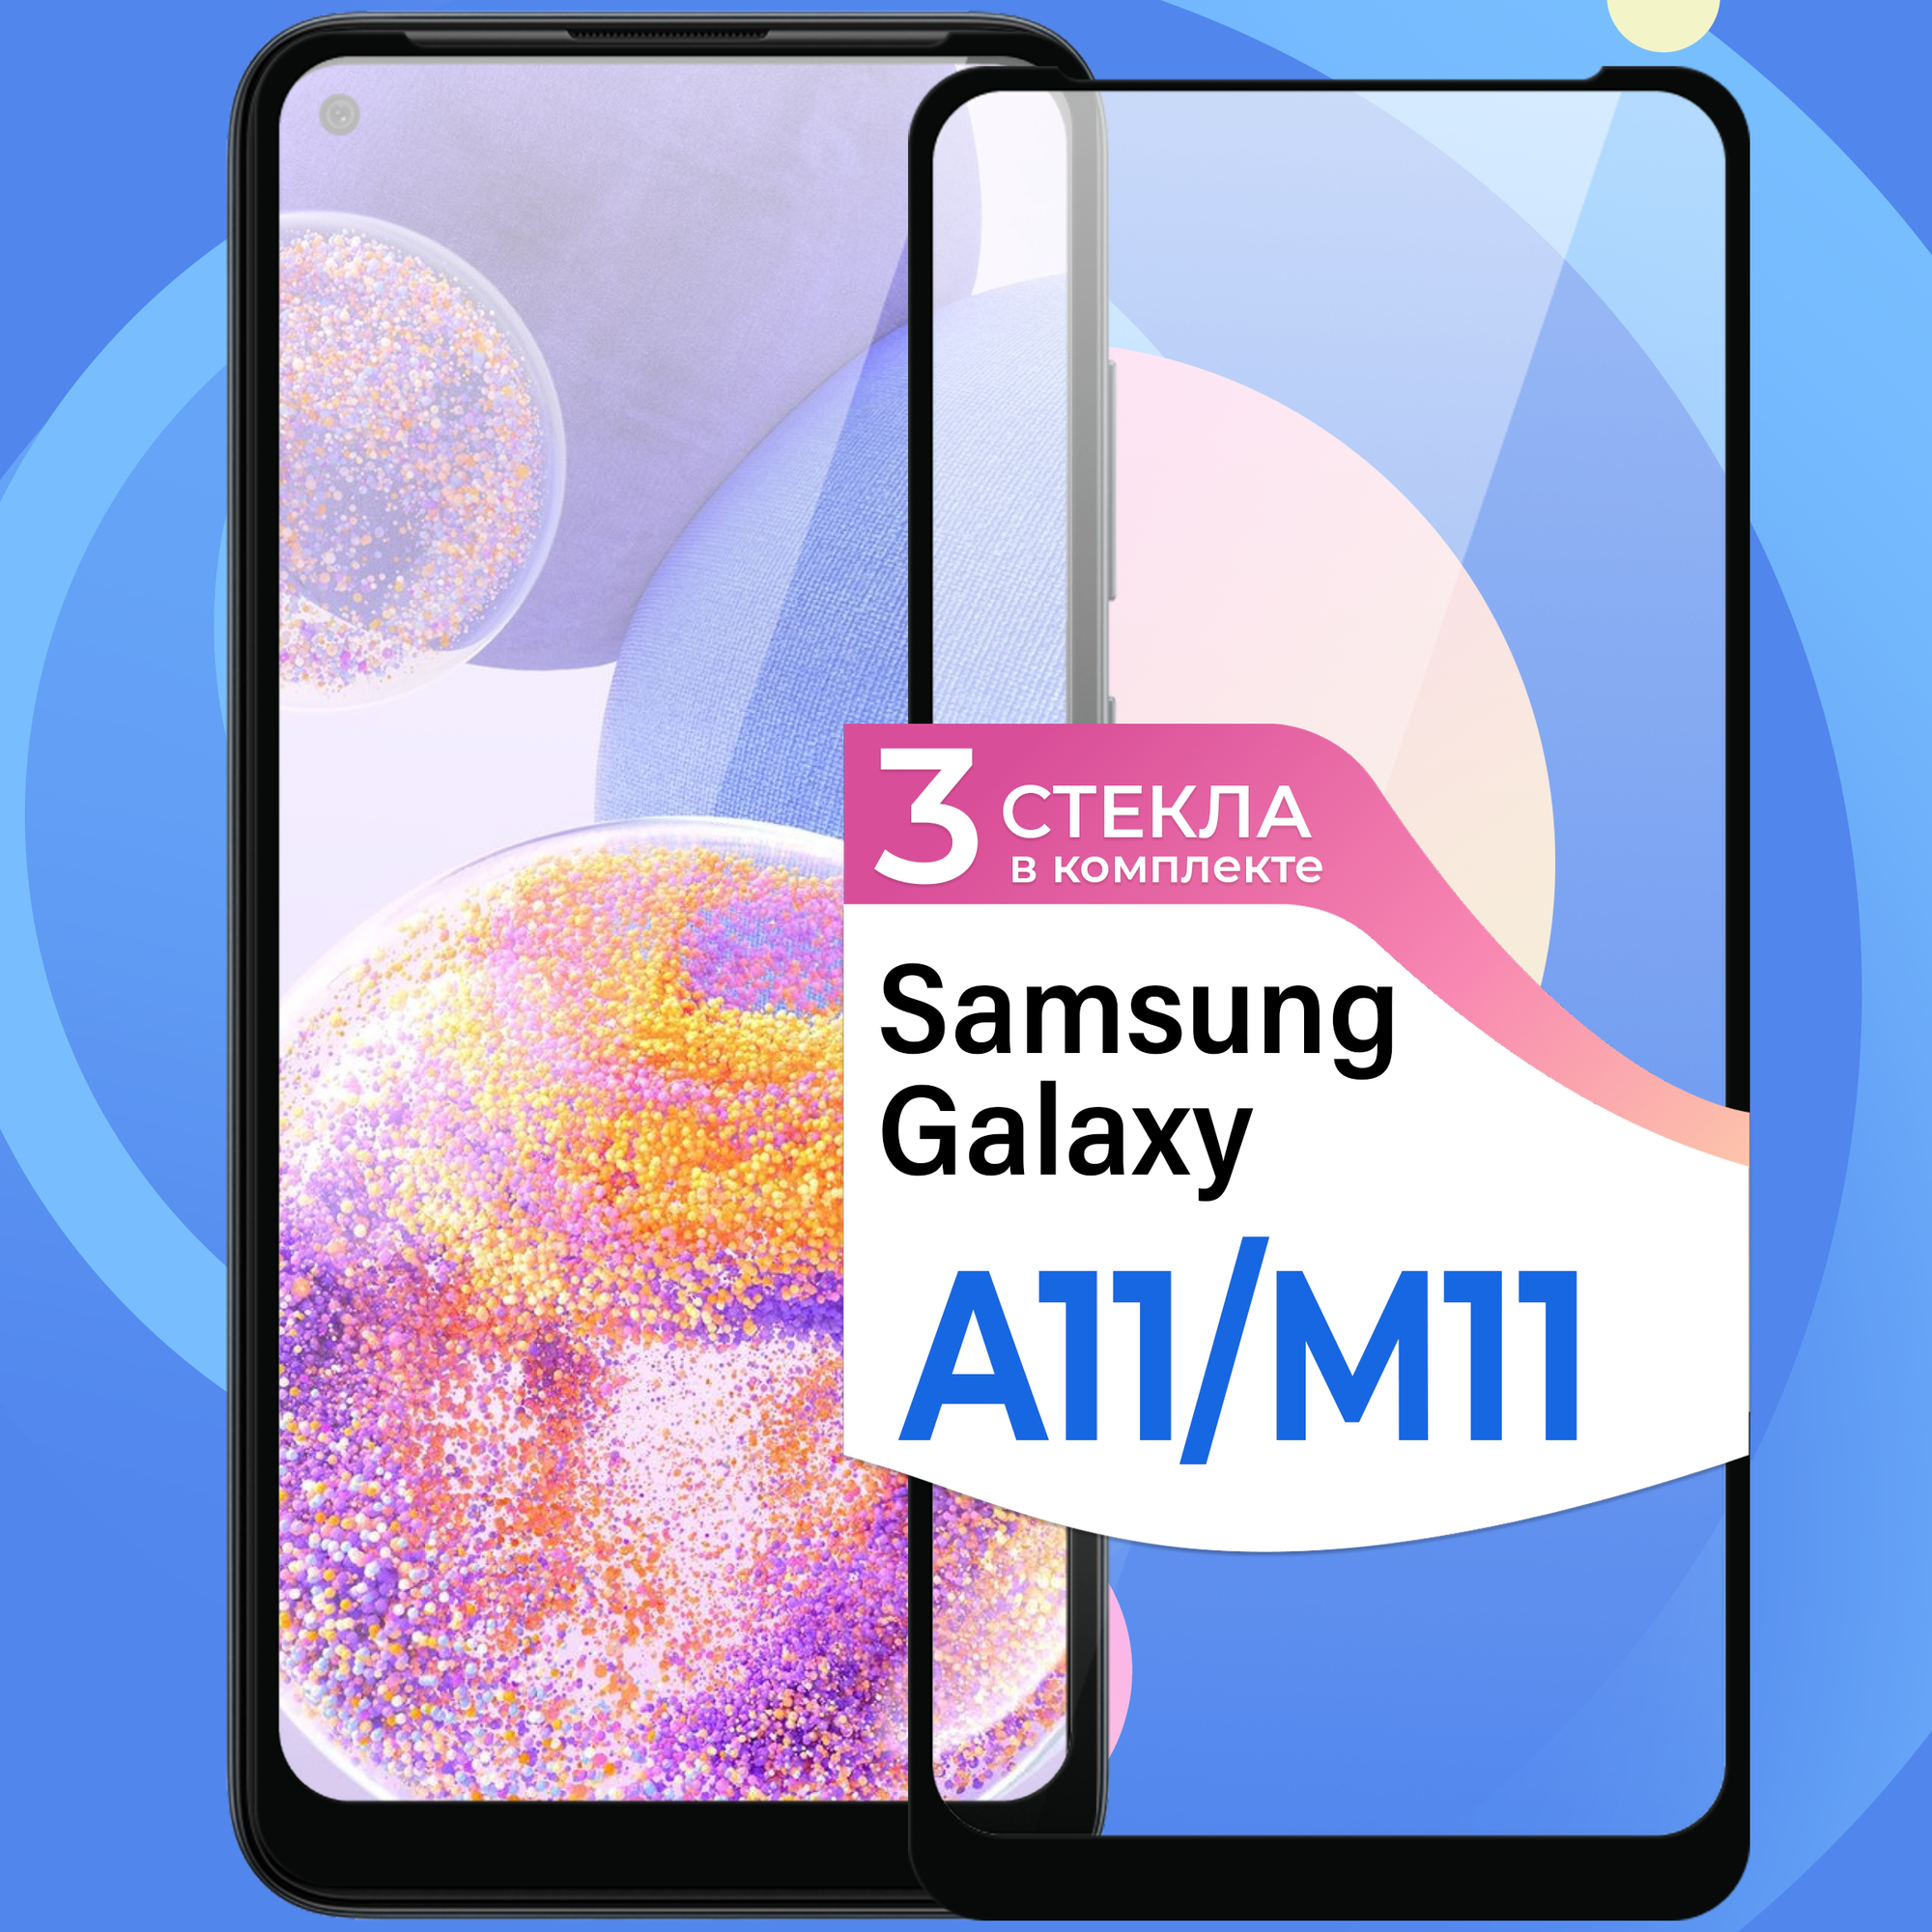 Противоударное стекло для смартфона Samsung Galaxy A11 и Samsung Galaxy M11 / Защитное глянцевое стекло на телефон Самсунг Галакси А11 и М11